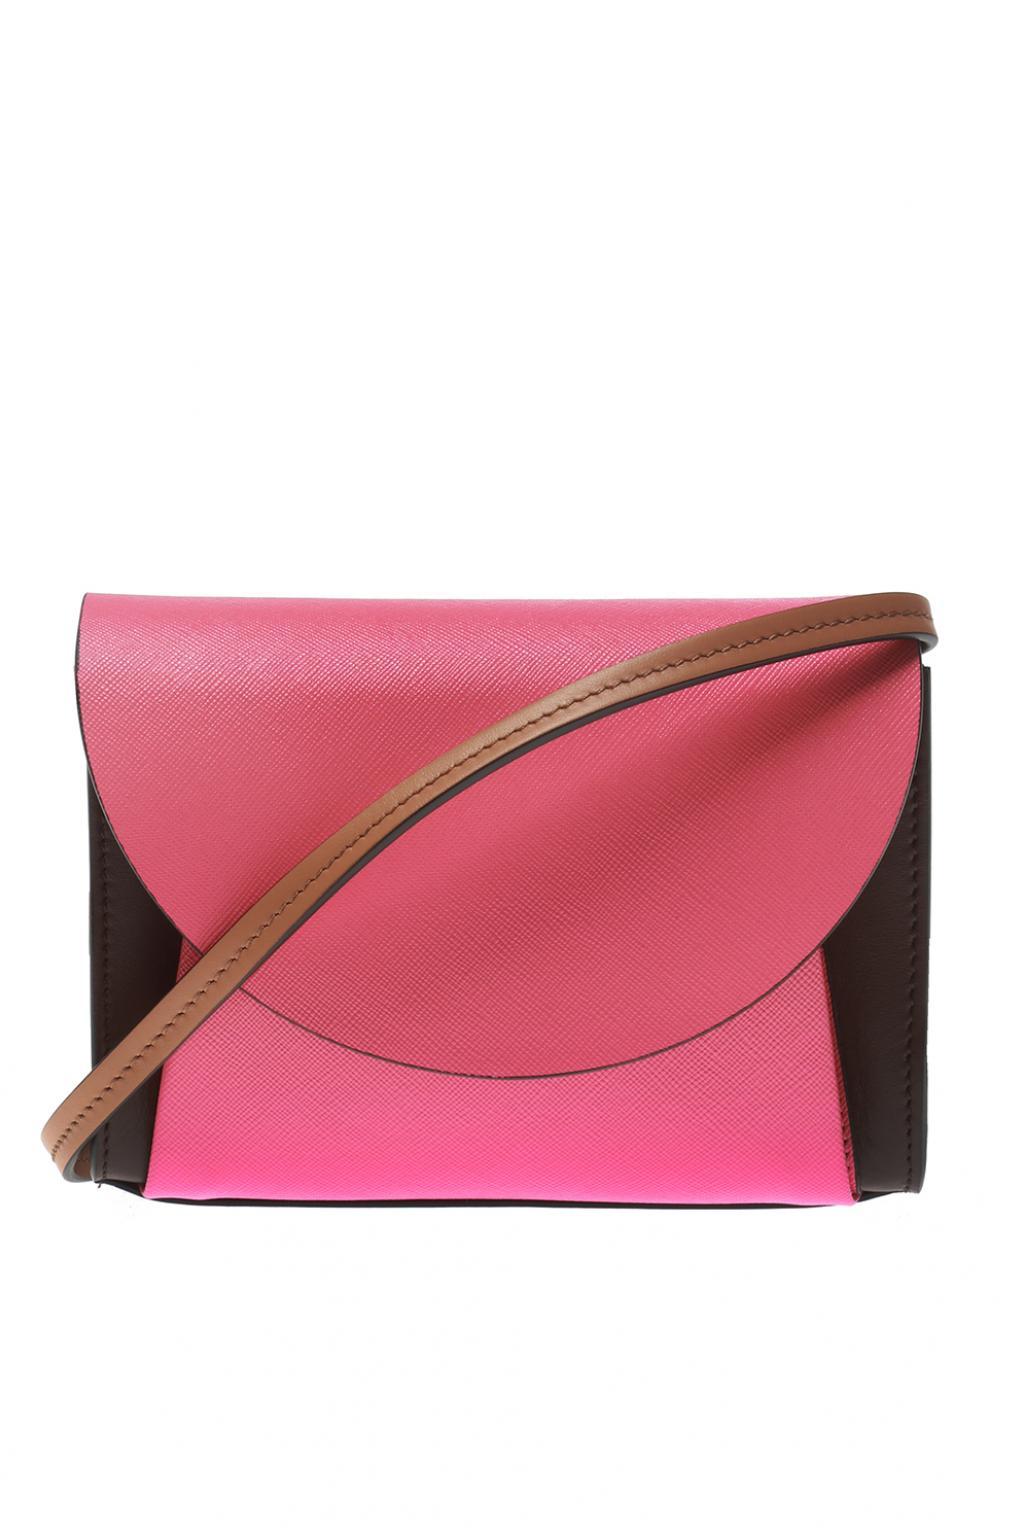 Lyst - Marni Multi-purpose Shoulder Bag in Pink